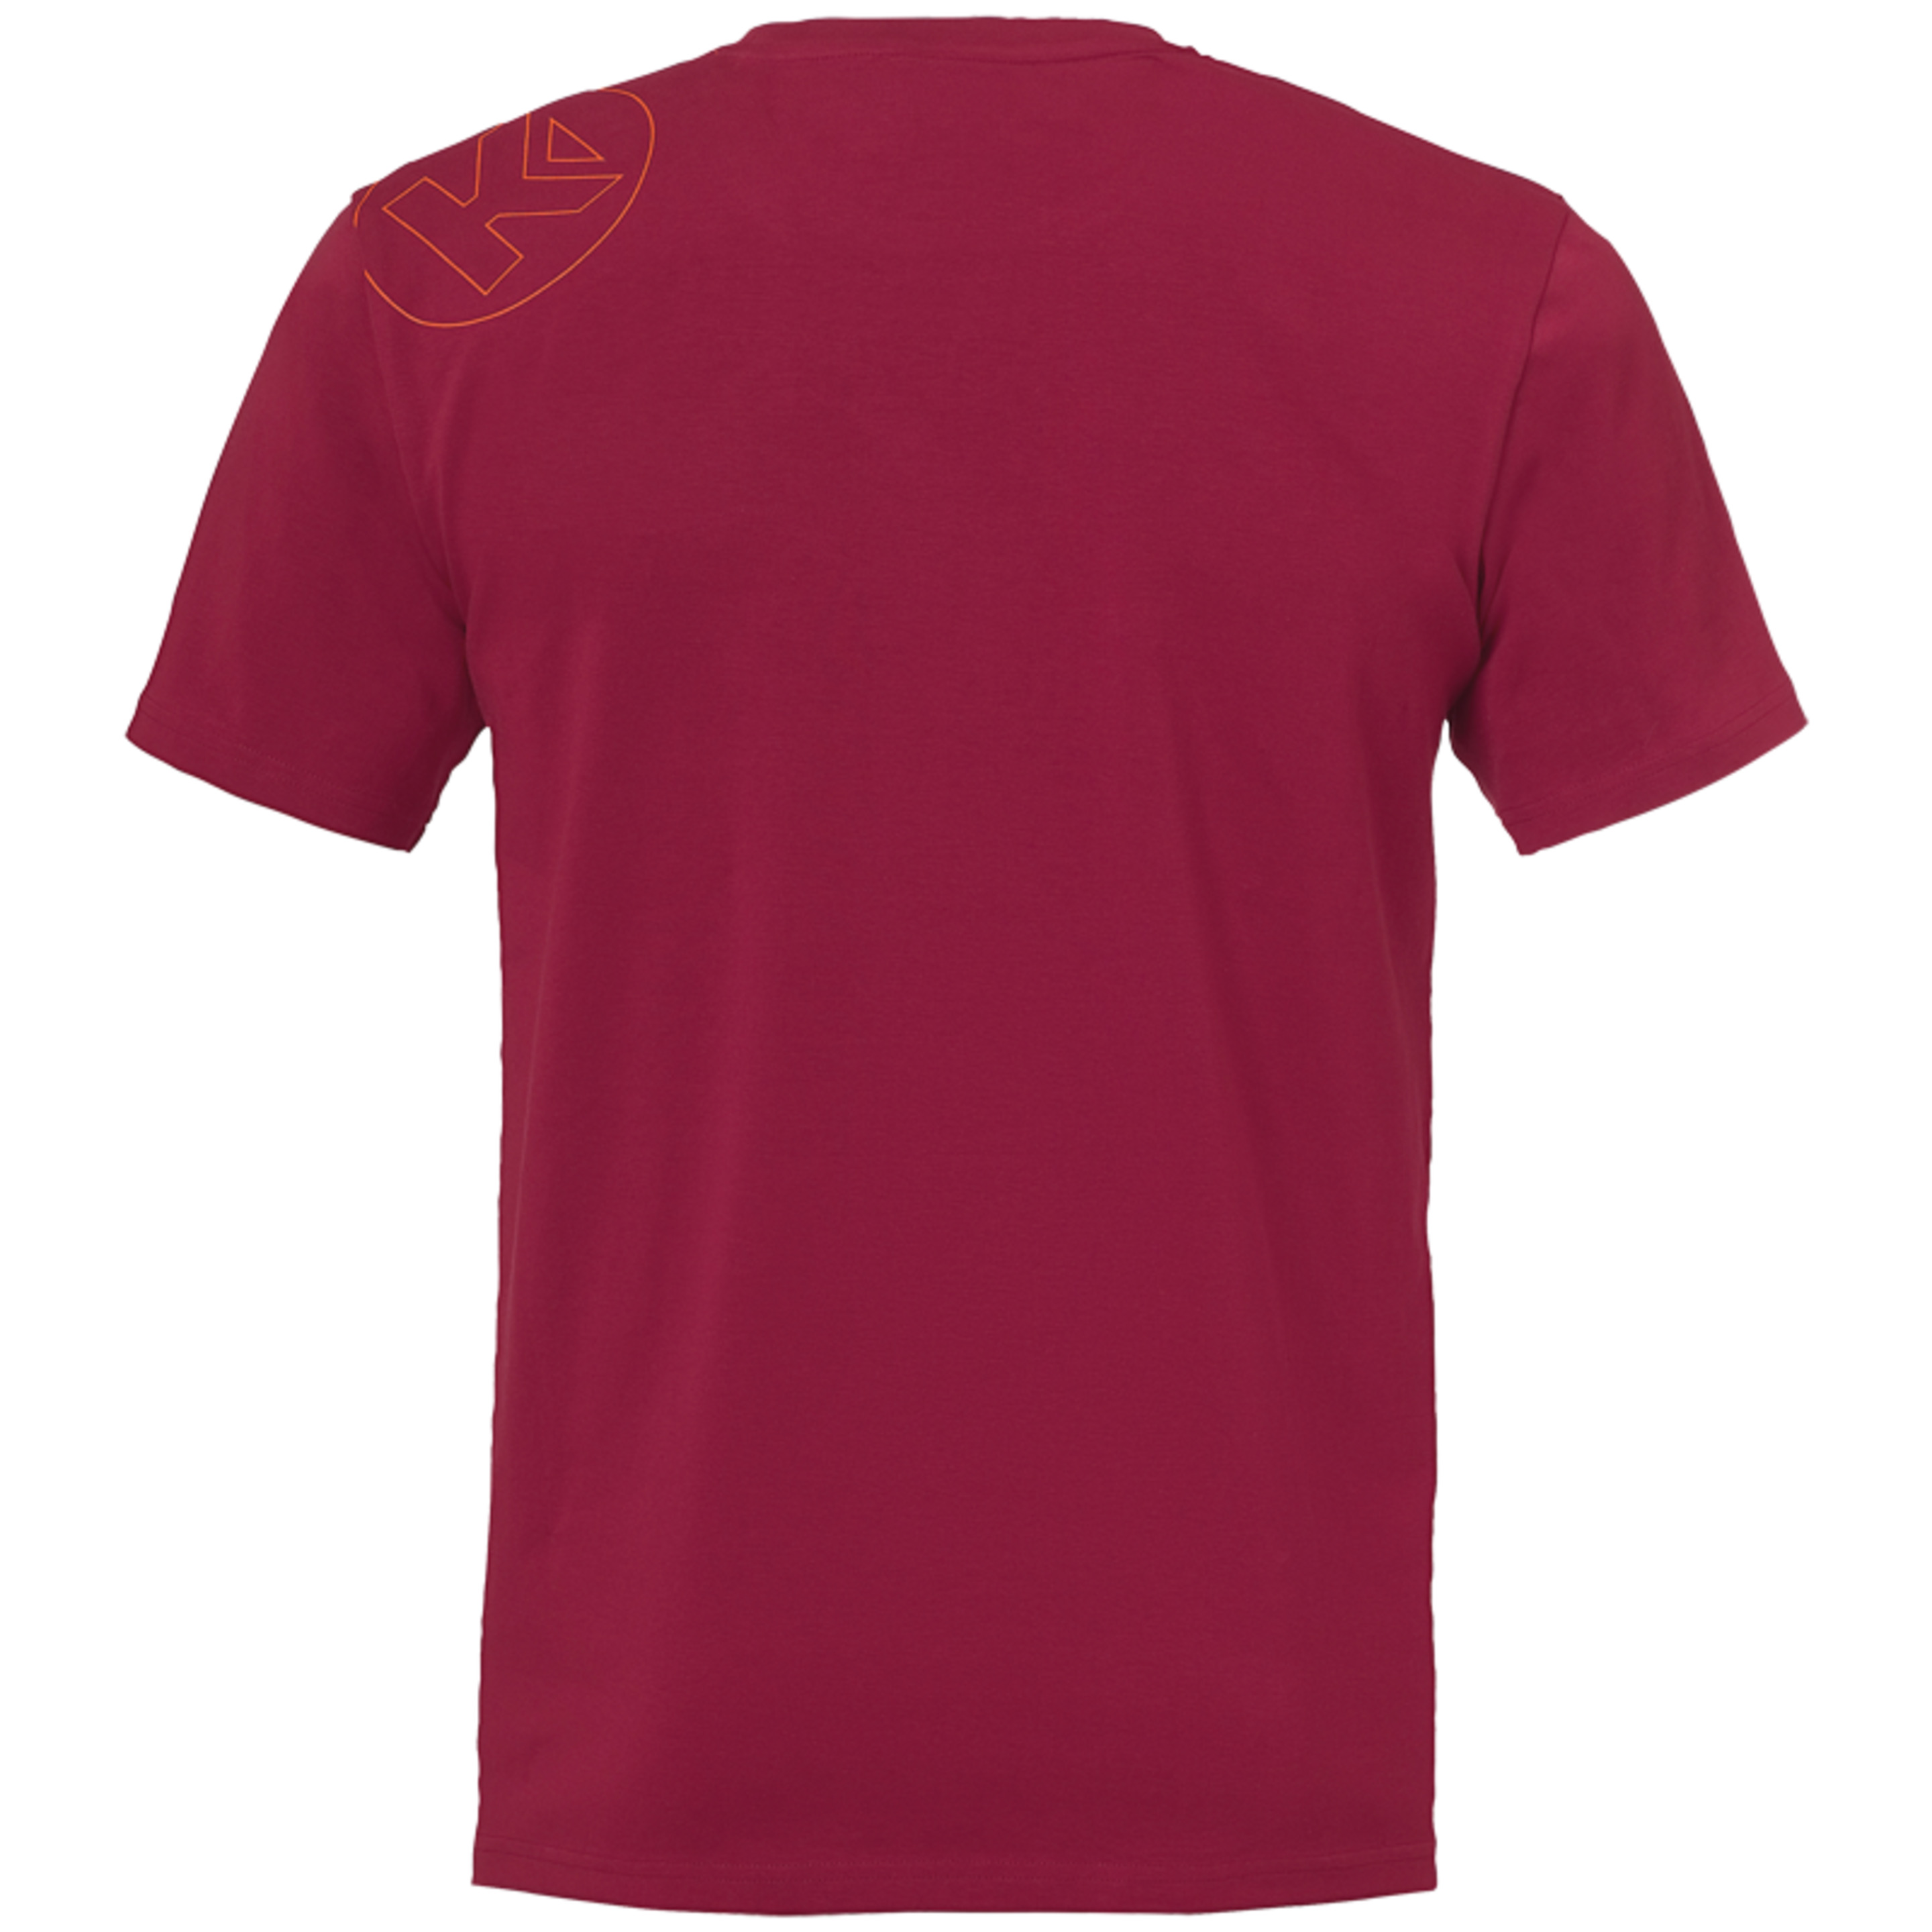 Graphic T-shirt Rojo Oscuro Kempa